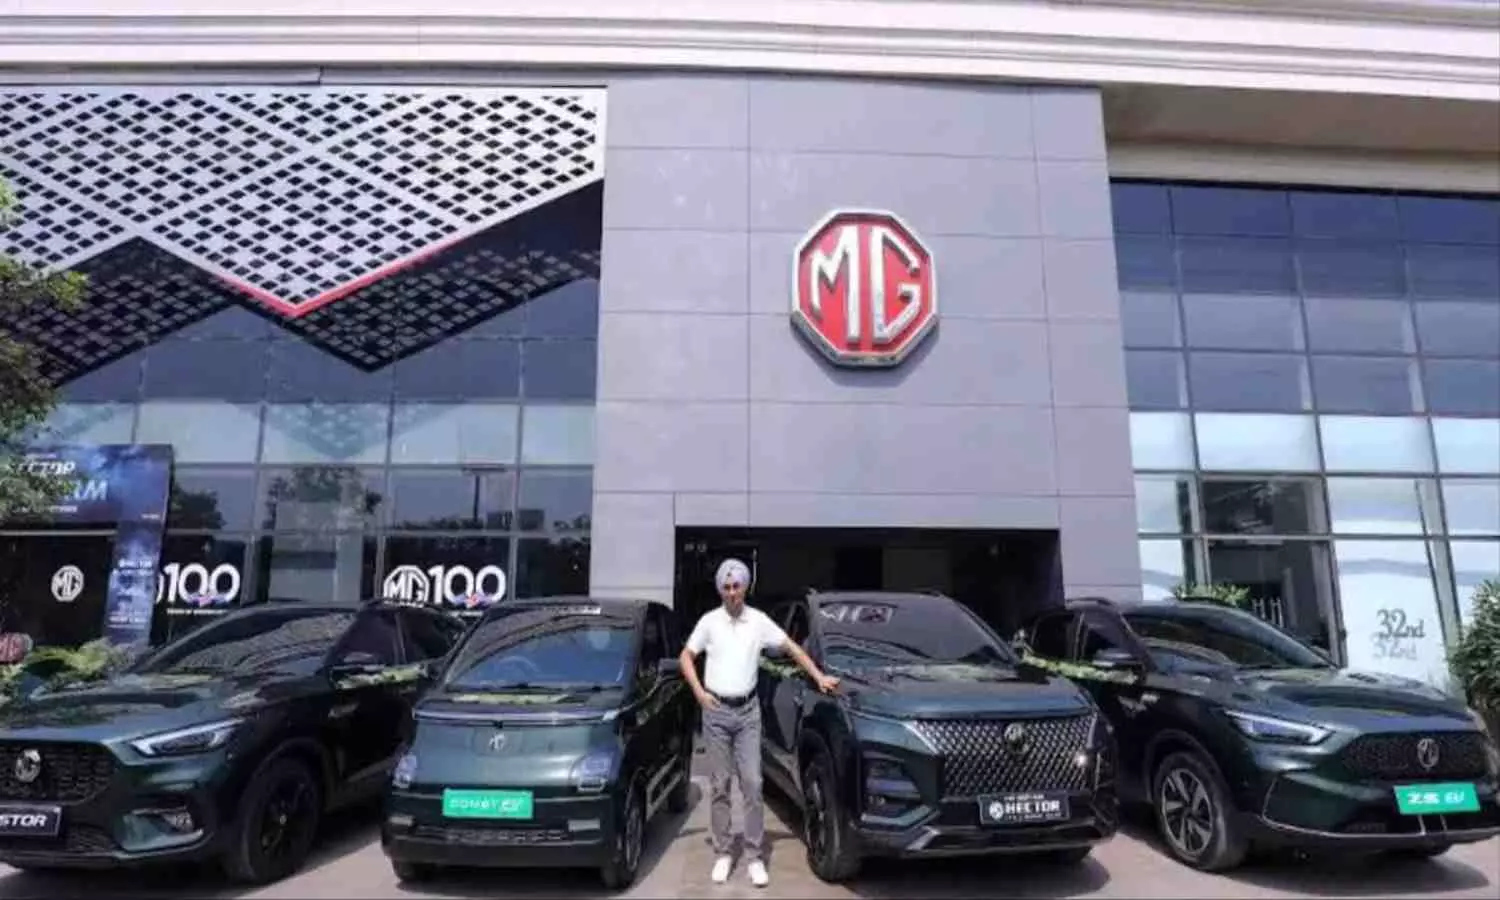 MG Motors ने लॉन्च की स्पेशल एडिशन गाड़ियां, जानें फीचर्स और Review